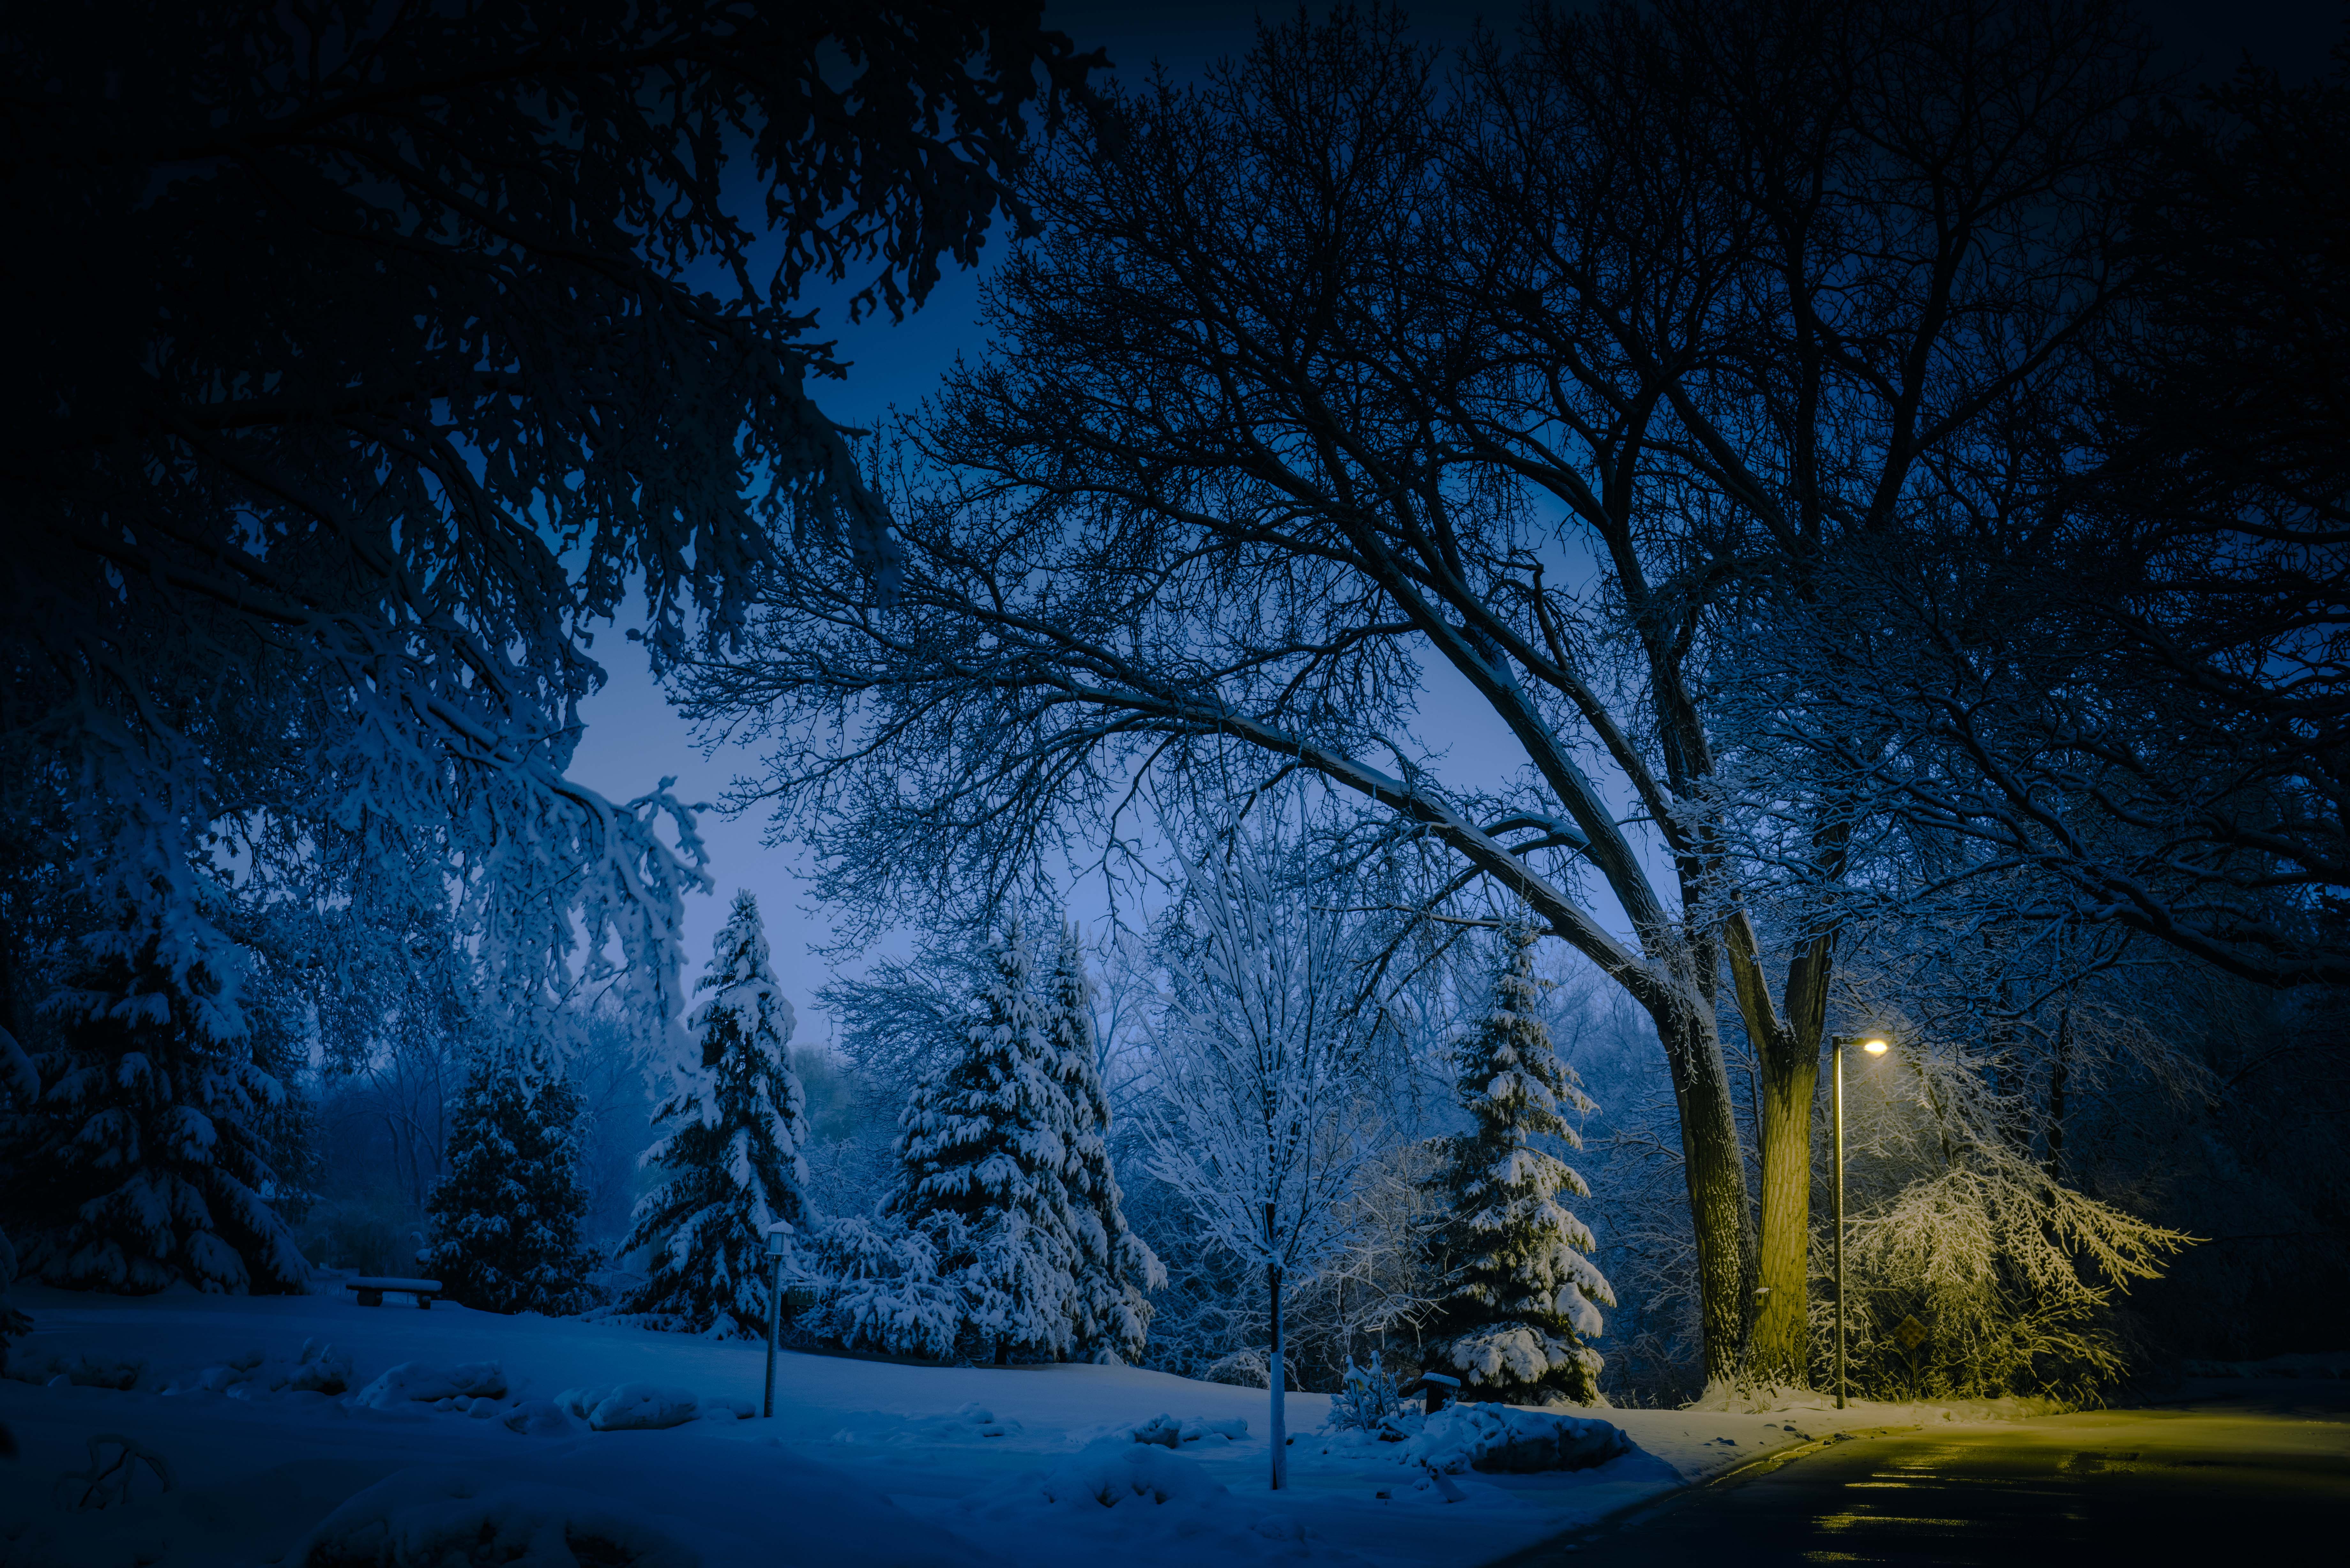 Fantasy winter night 1152 x 864 Wallpaper